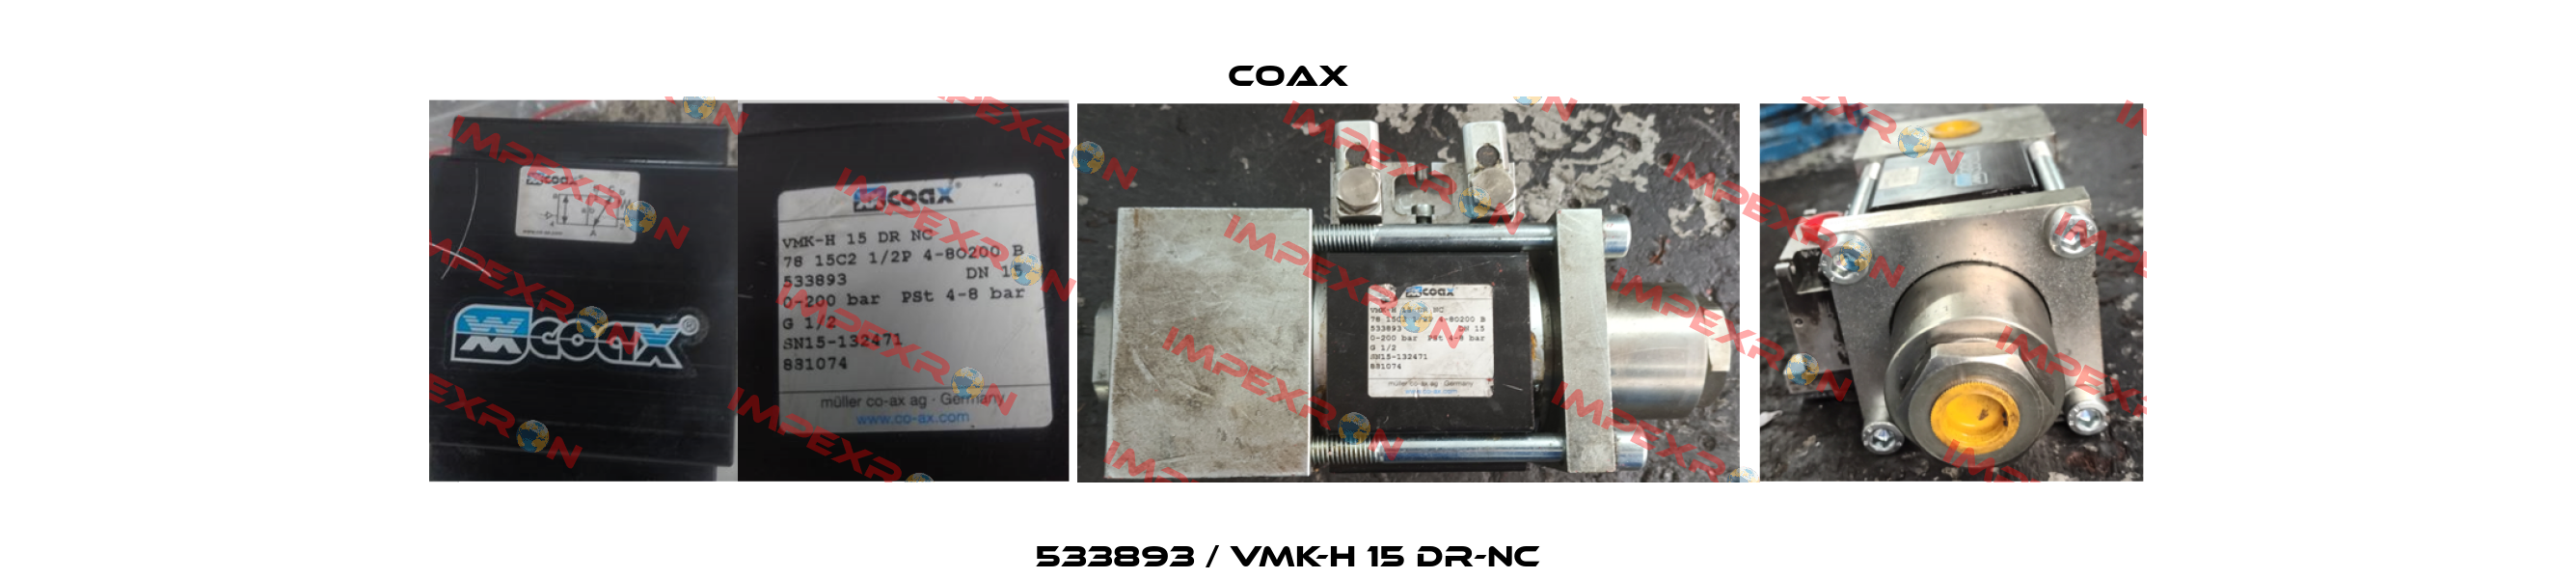 533893 / VMK-H 15 DR-NC Coax